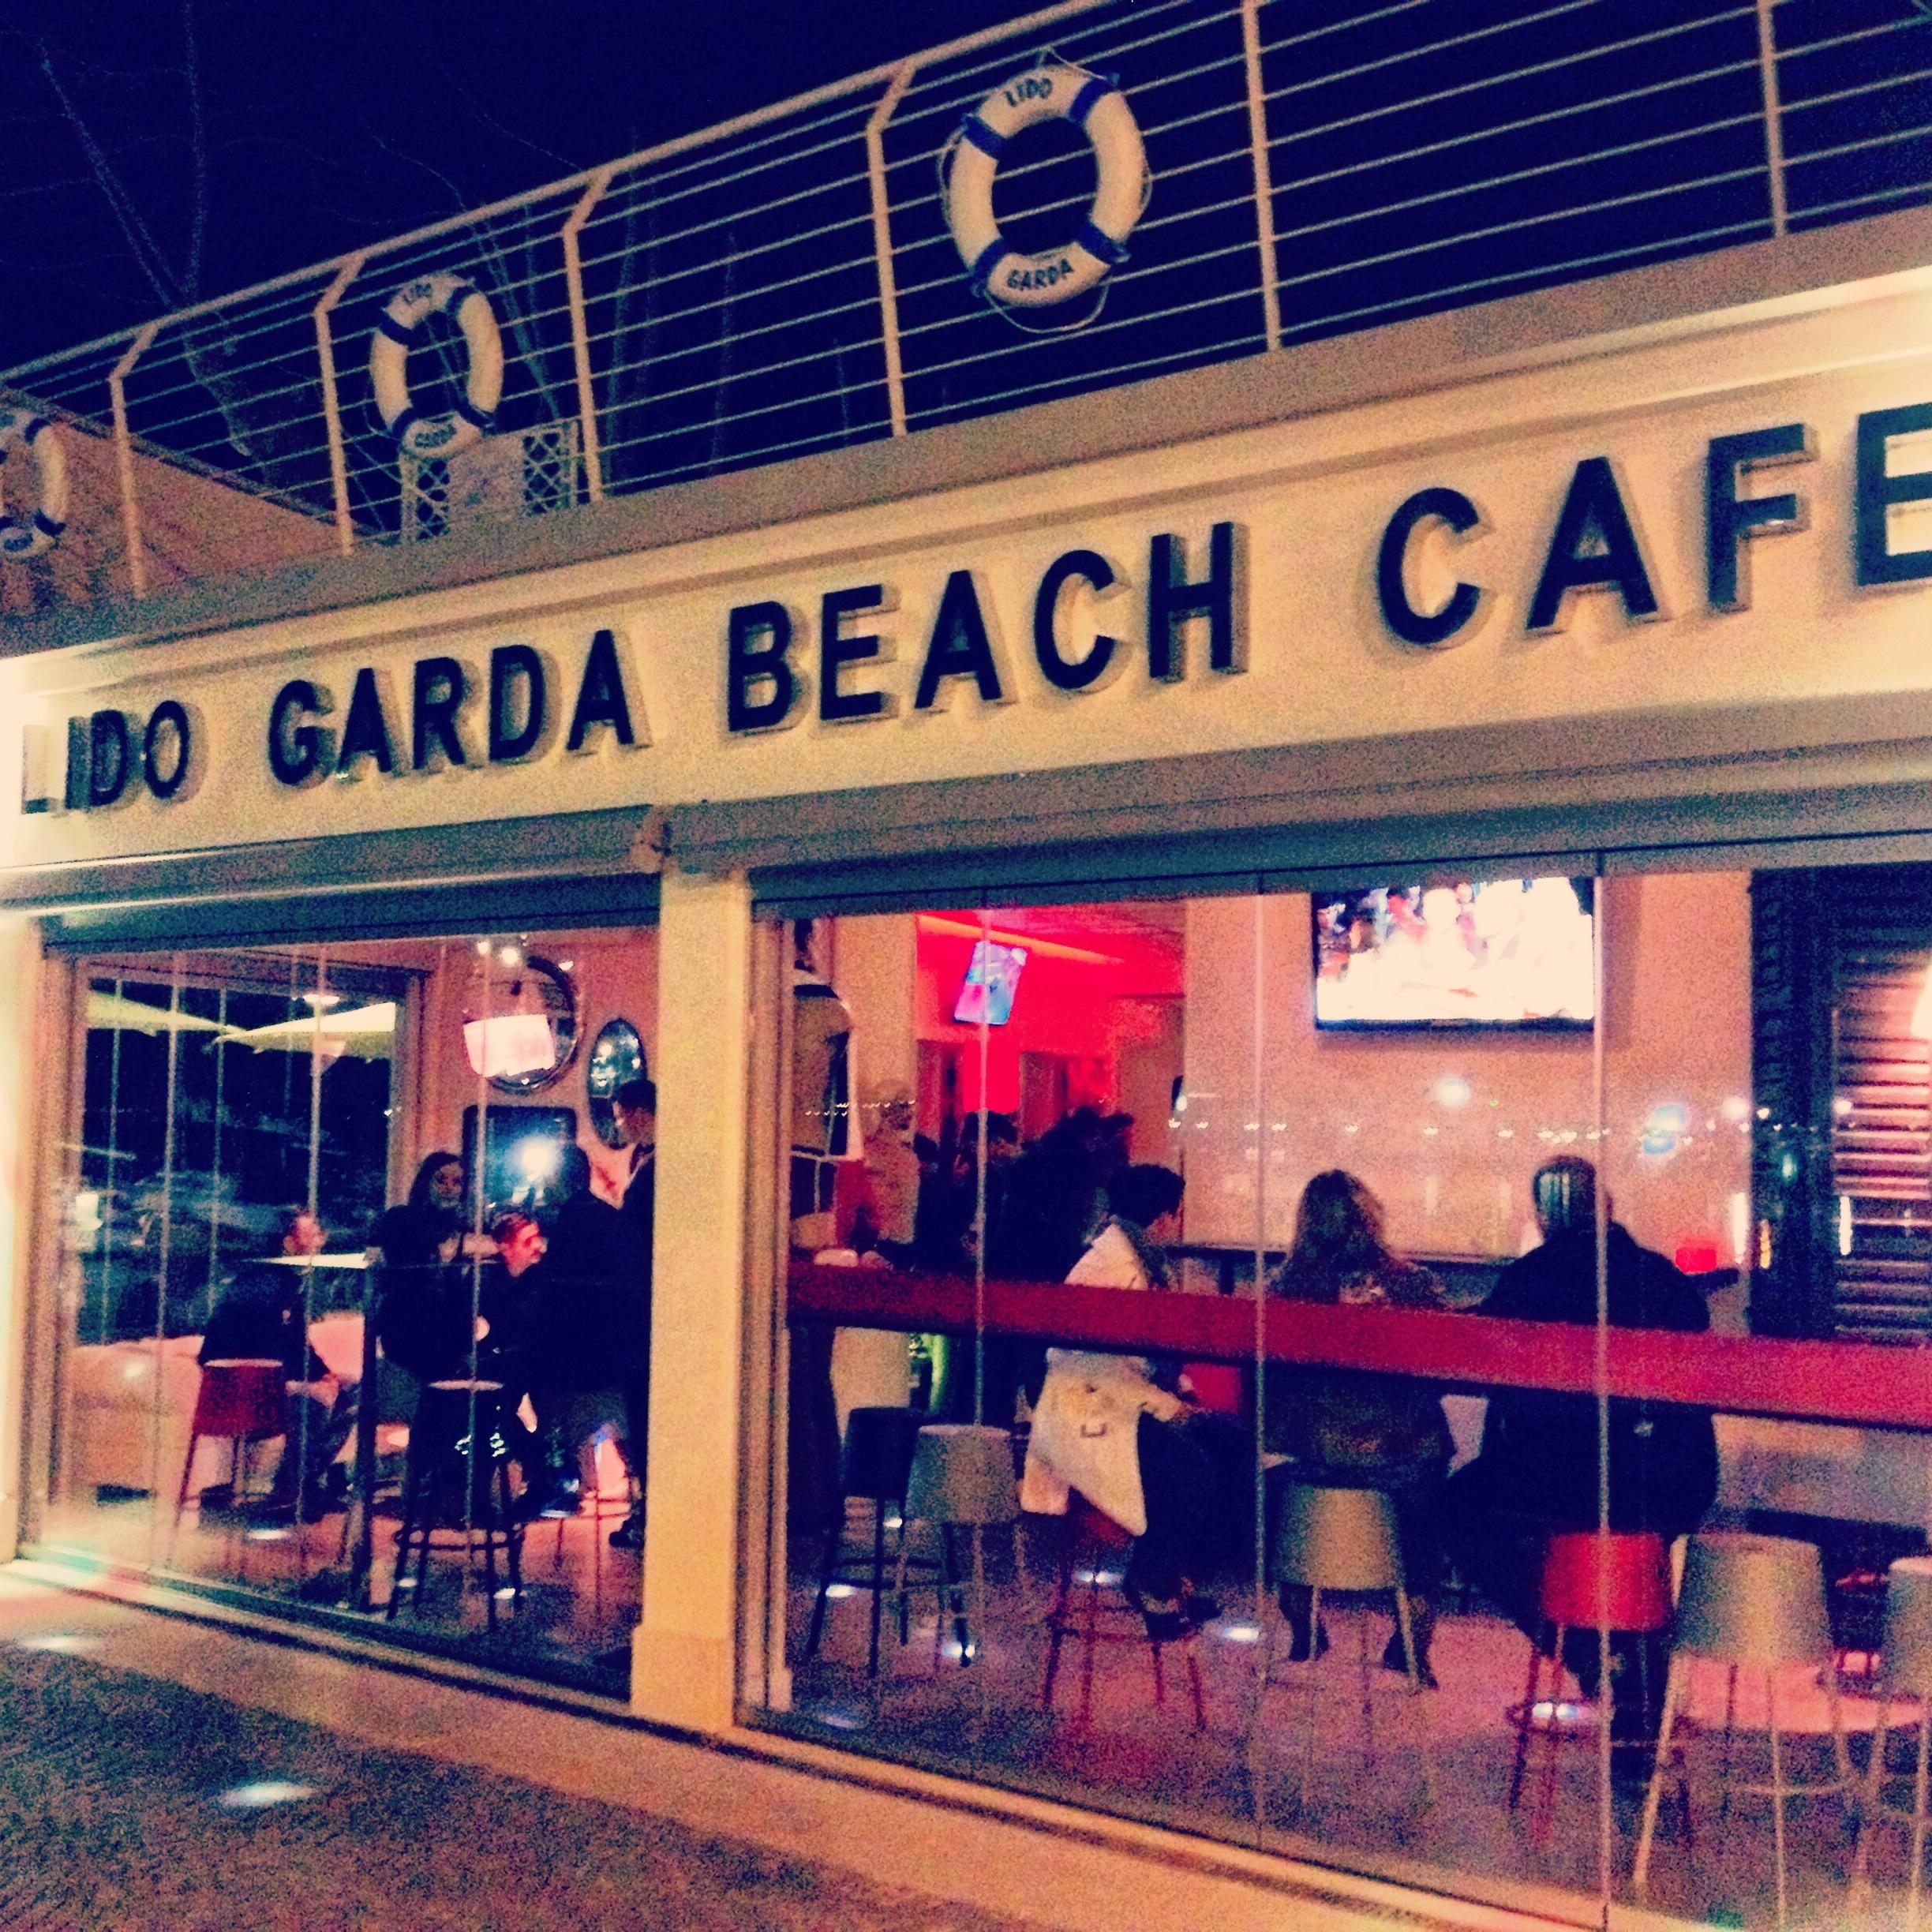 Lido Garda Beach cafe